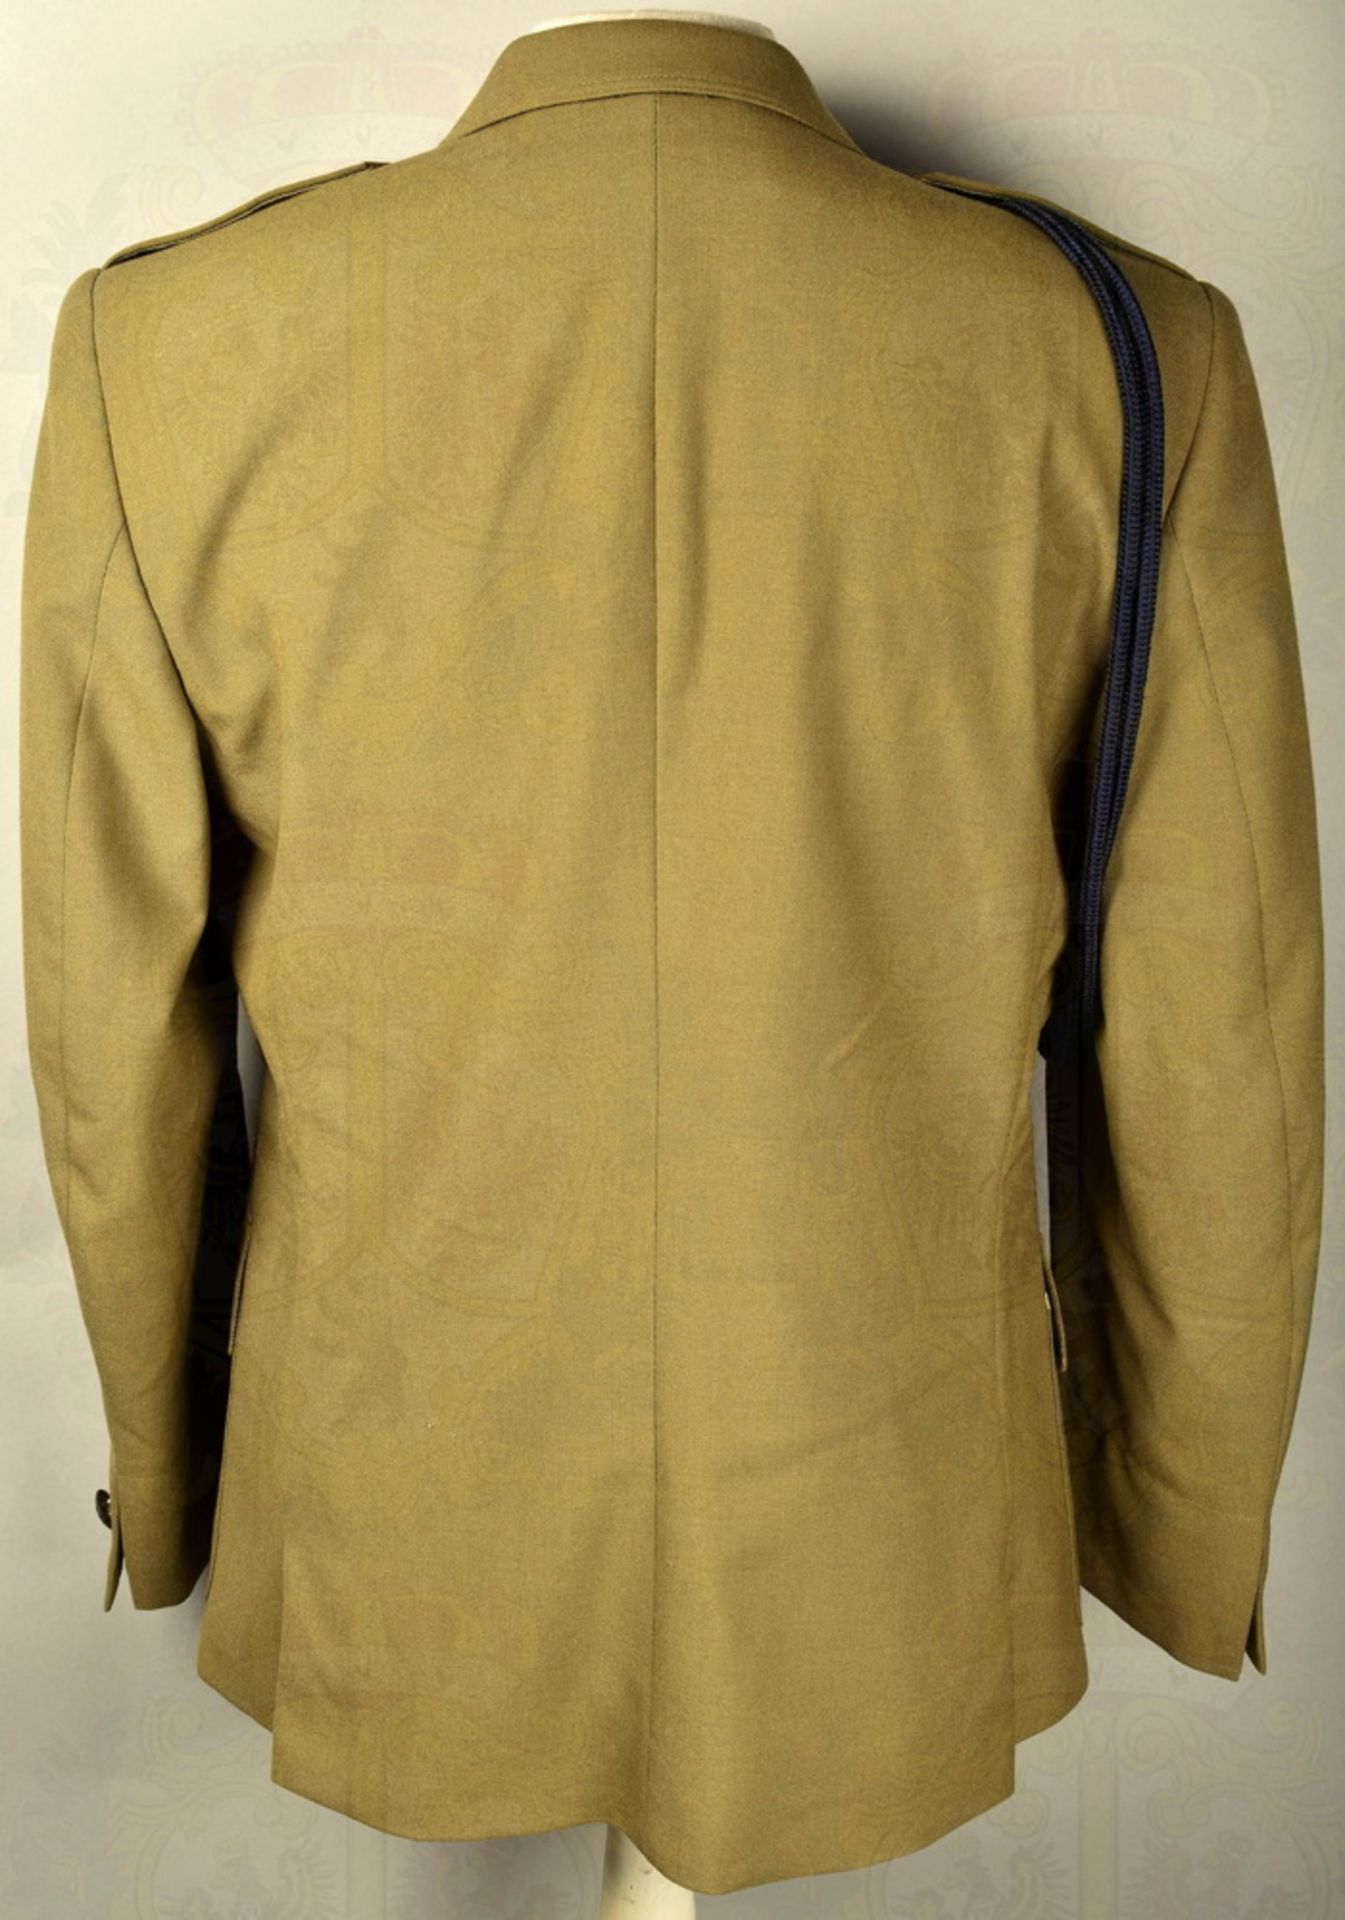 SOMMER-AUSGEHUNIFORM OFFIZIERE DER LANDSTREITKRÄFTE Uniformrock khakifarbenes Tuch, 2 Brust- u. 2 - Image 5 of 5